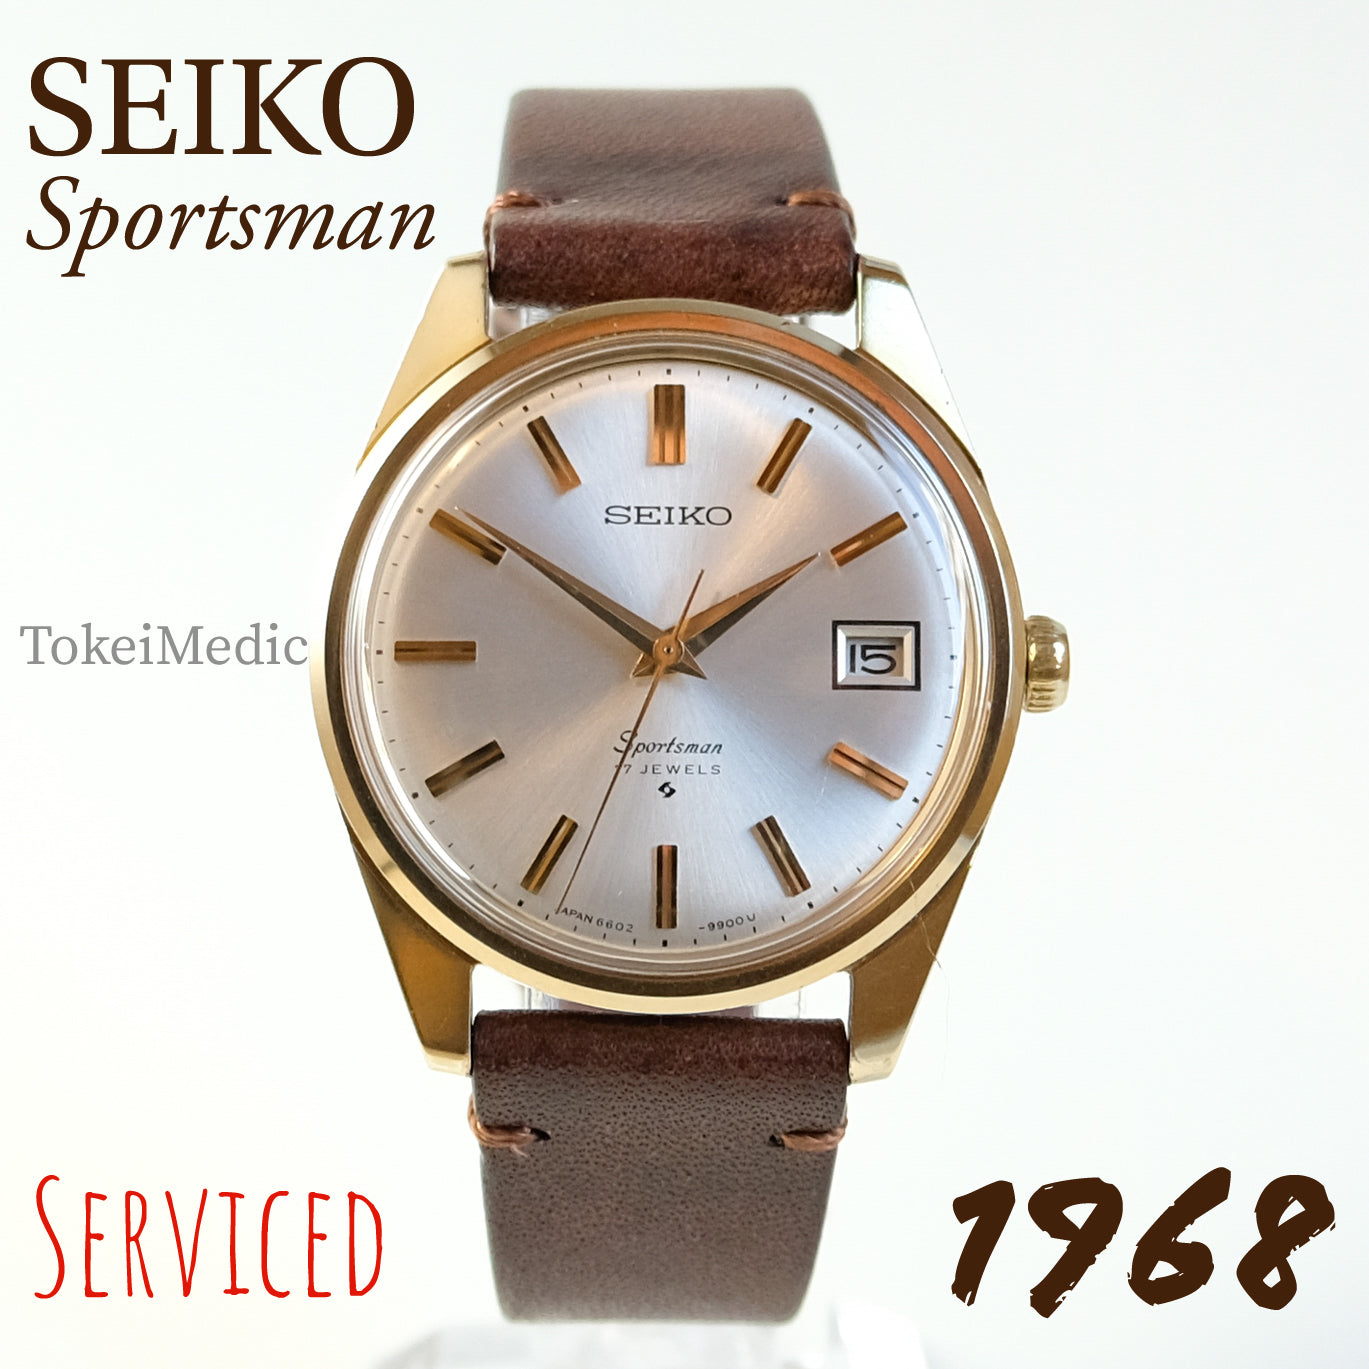 1968 Seiko Sportsman SGP 6602-9982 plus two Seiko straps – TokeiMedic